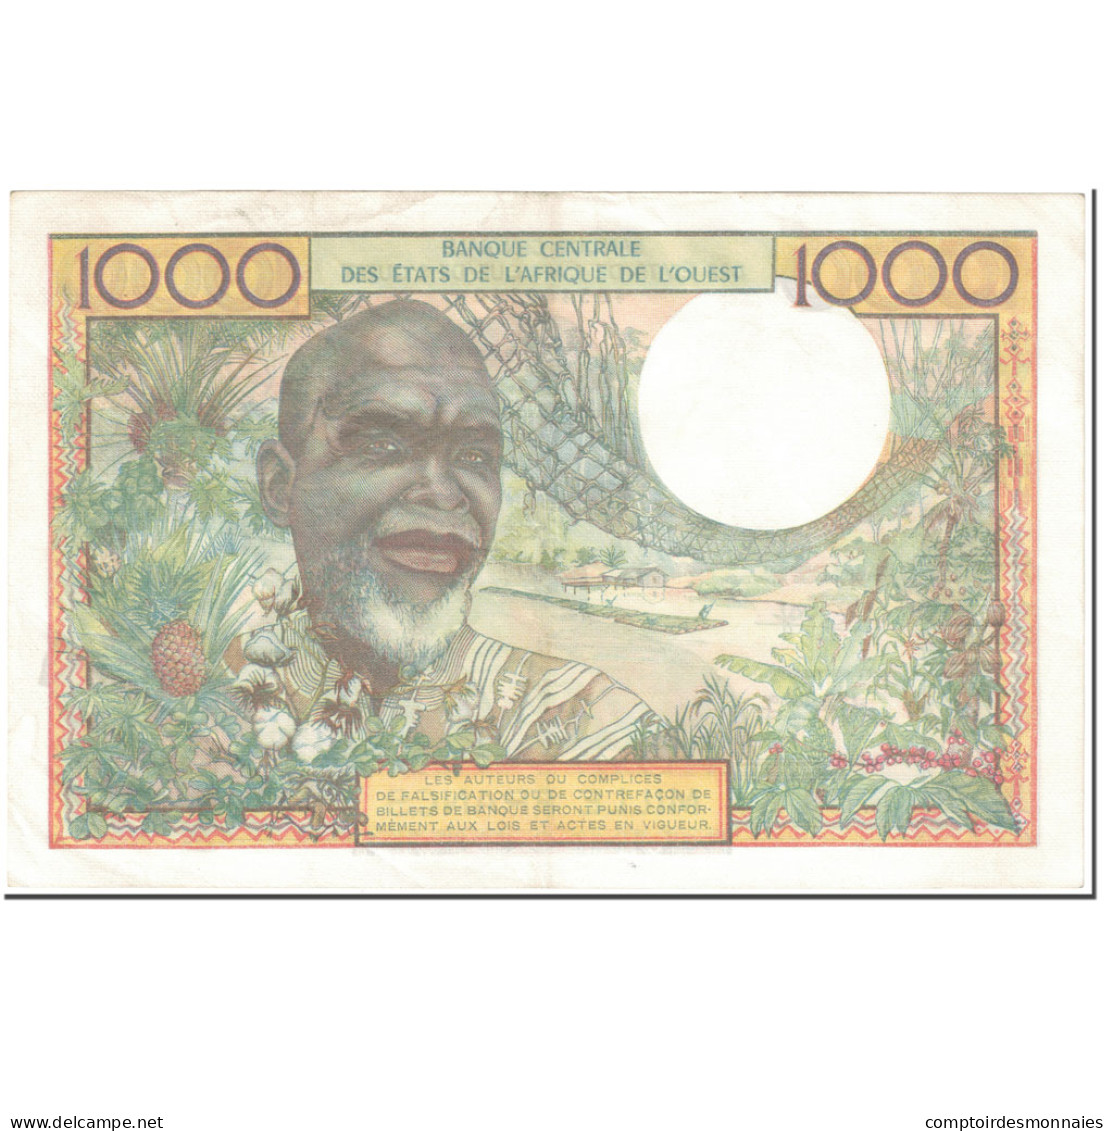 Billet, West African States, 1000 Francs, 1980, Undated (1980), KM:103An, TTB - États D'Afrique De L'Ouest